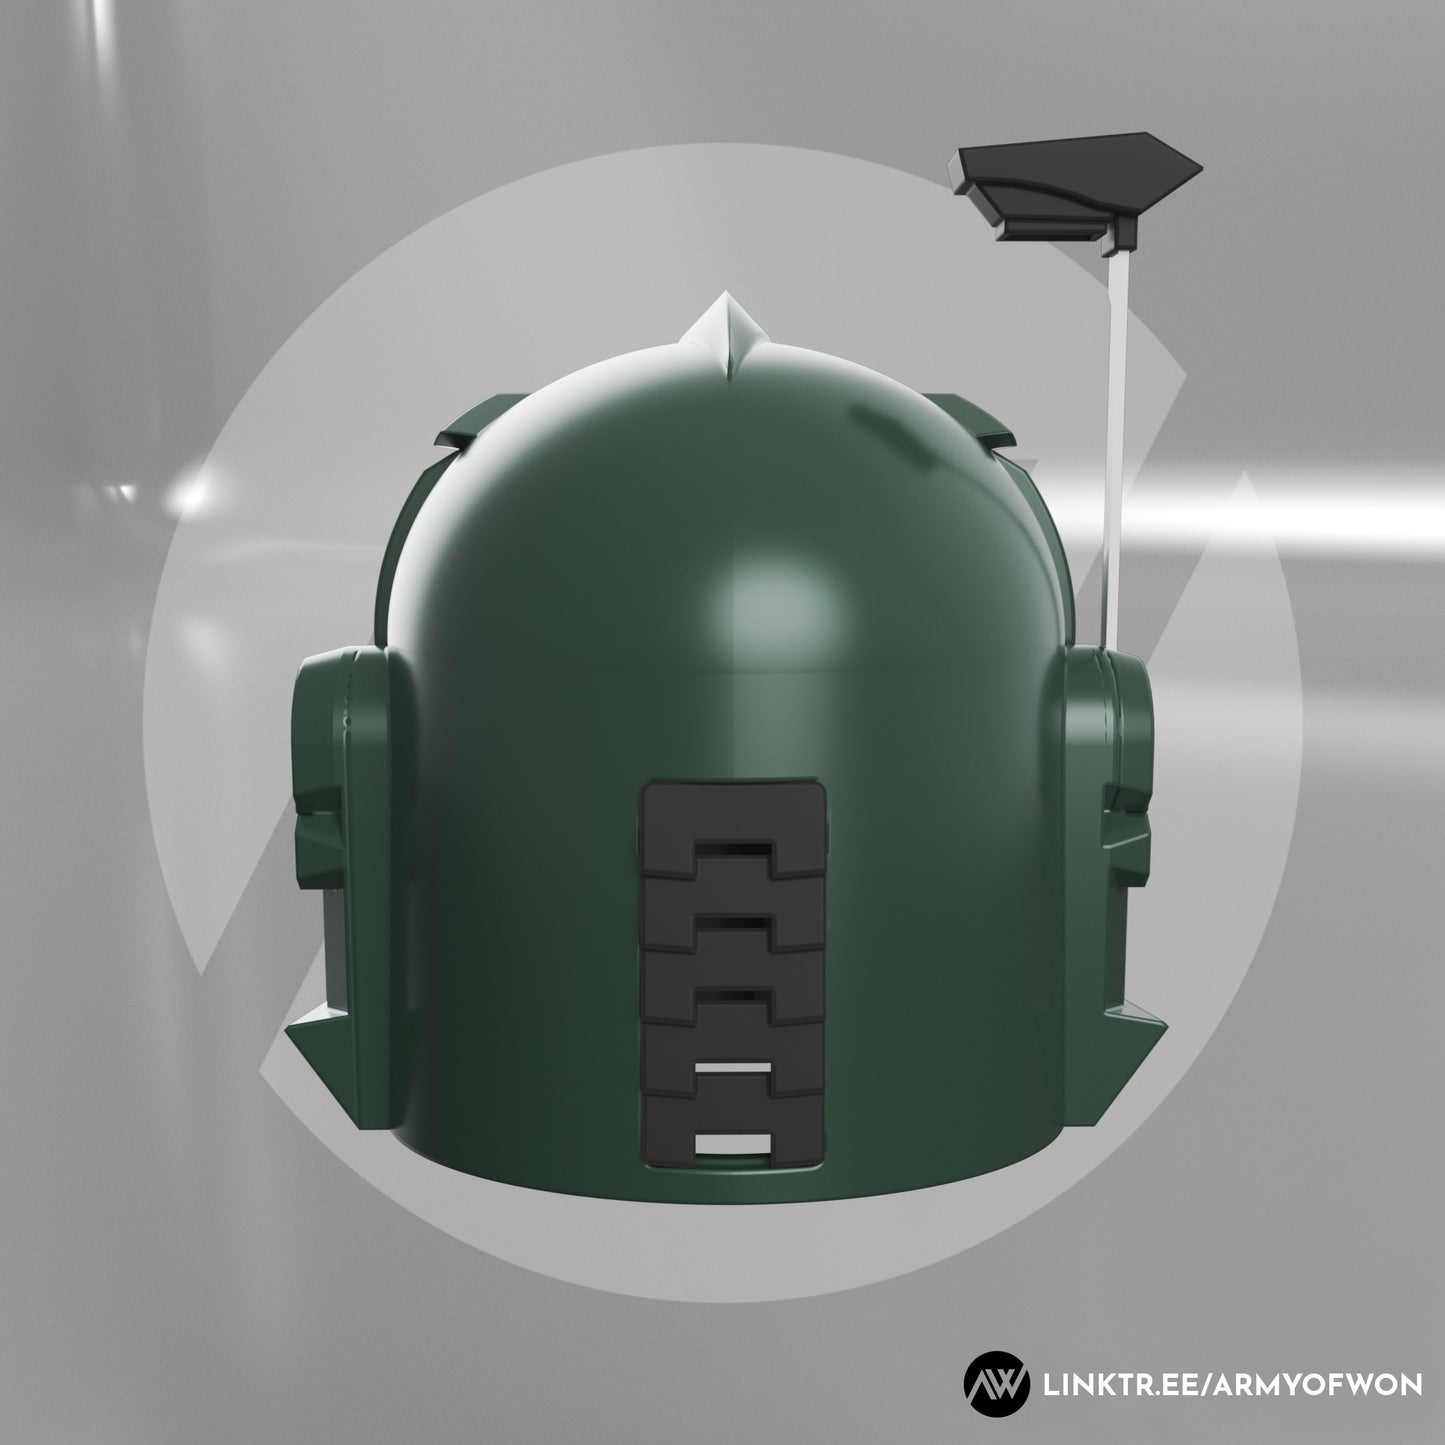 Green Power Ranger inspired Mandalorian Helmet - STL digital file